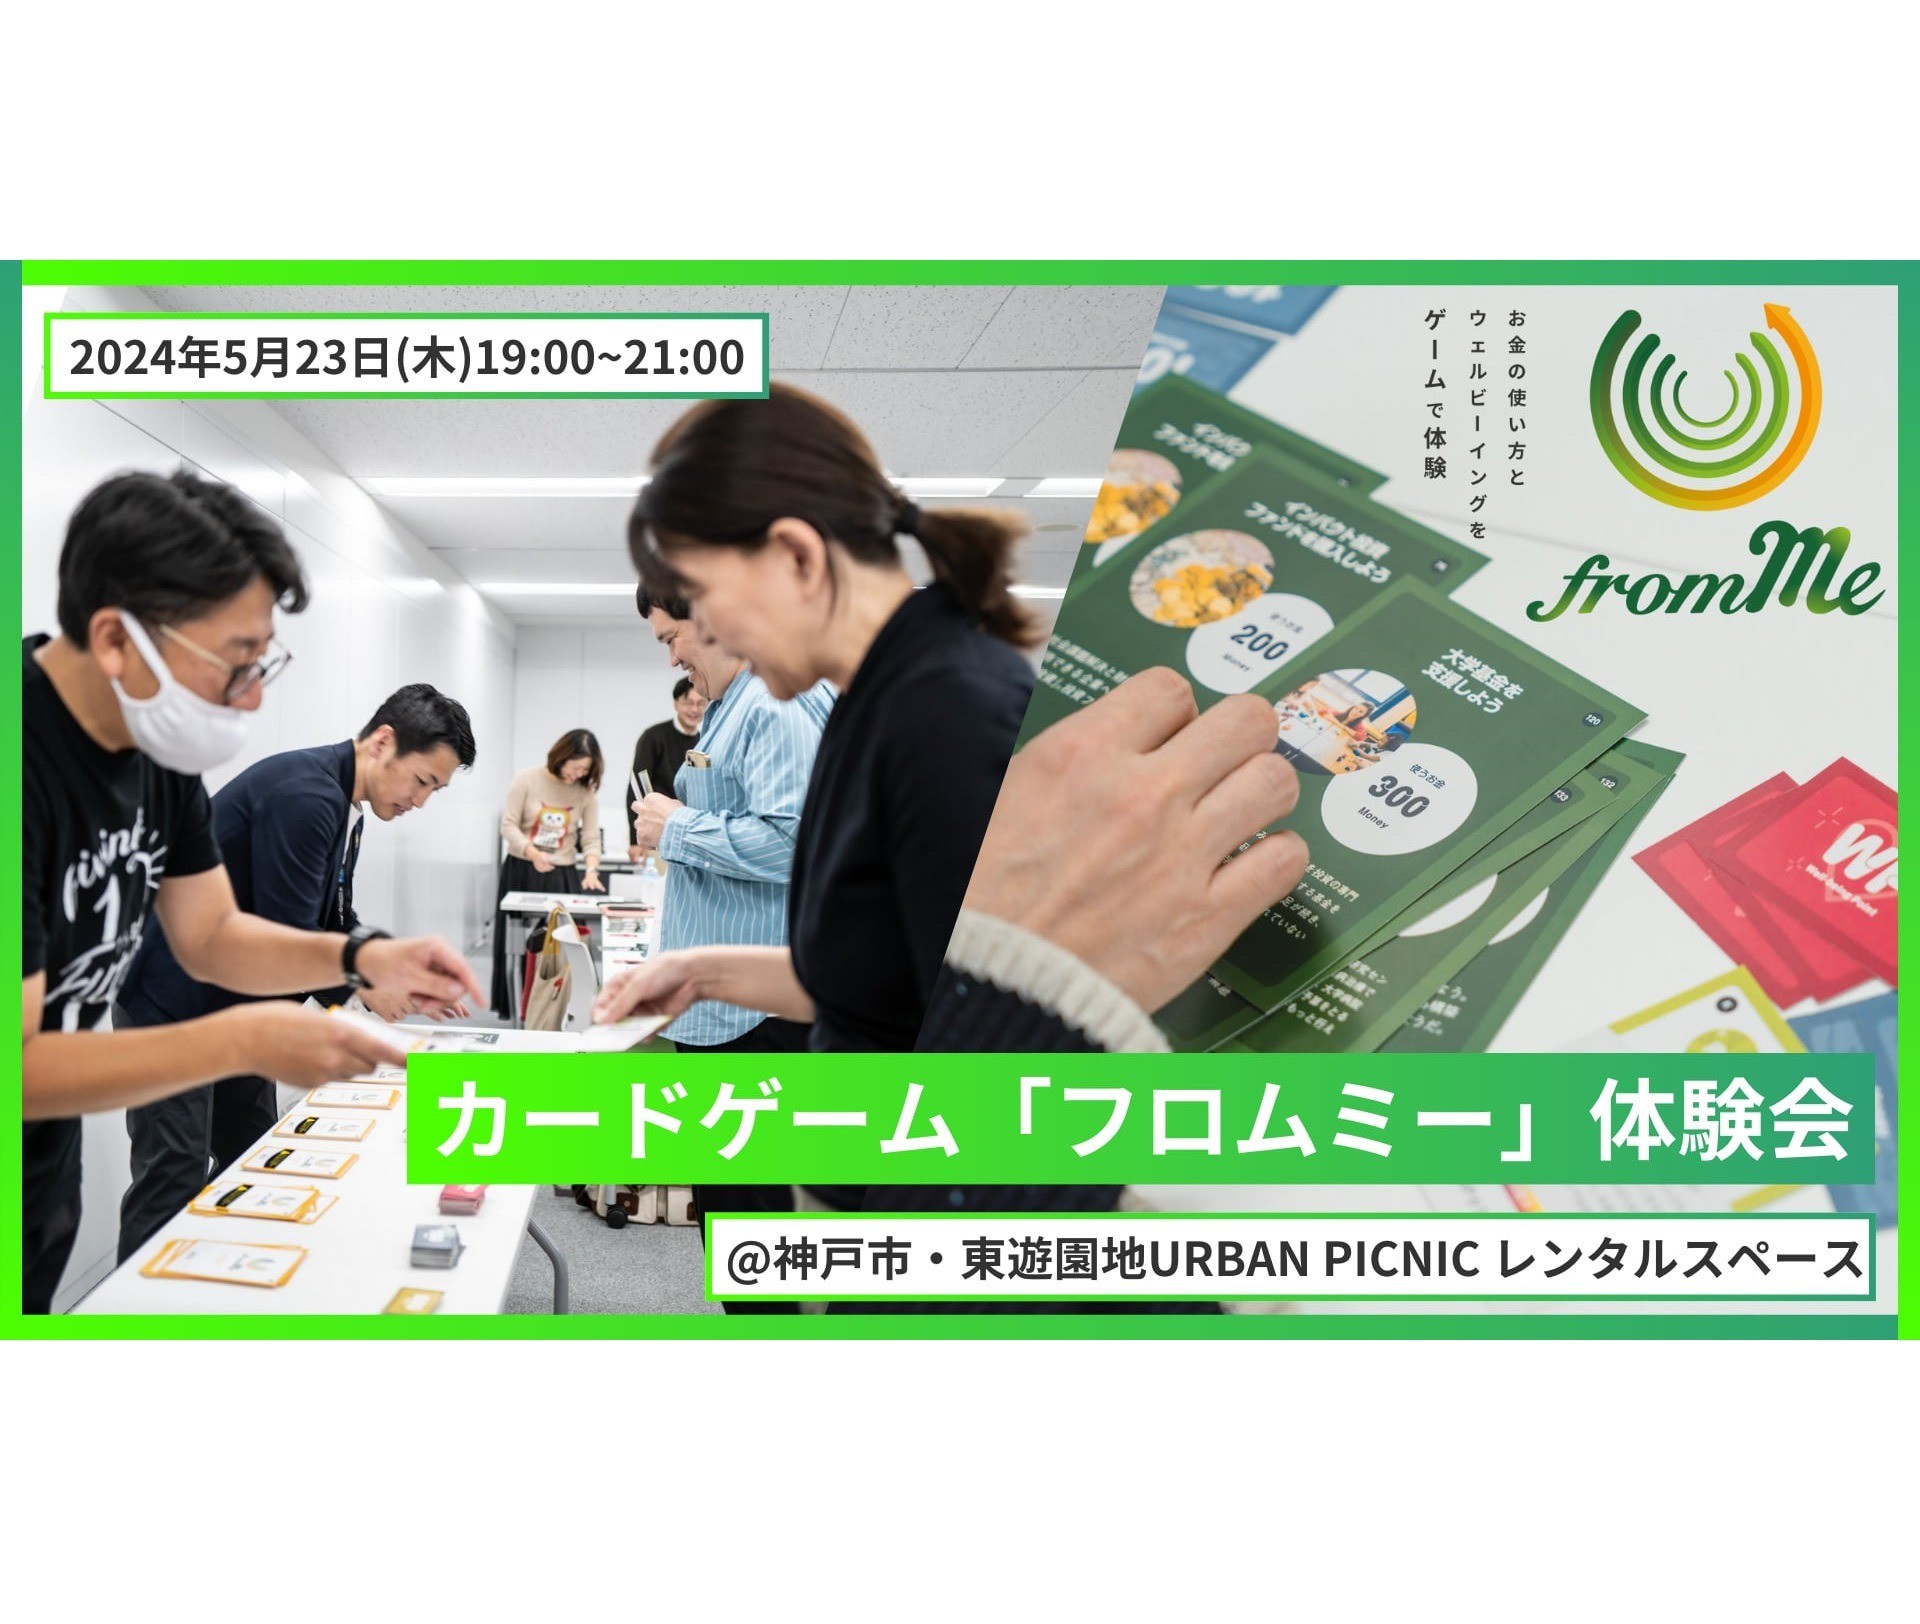 【5/23・神戸】神戸ソーシャル会 番外編 カードゲーム「フロムミー」 体験会